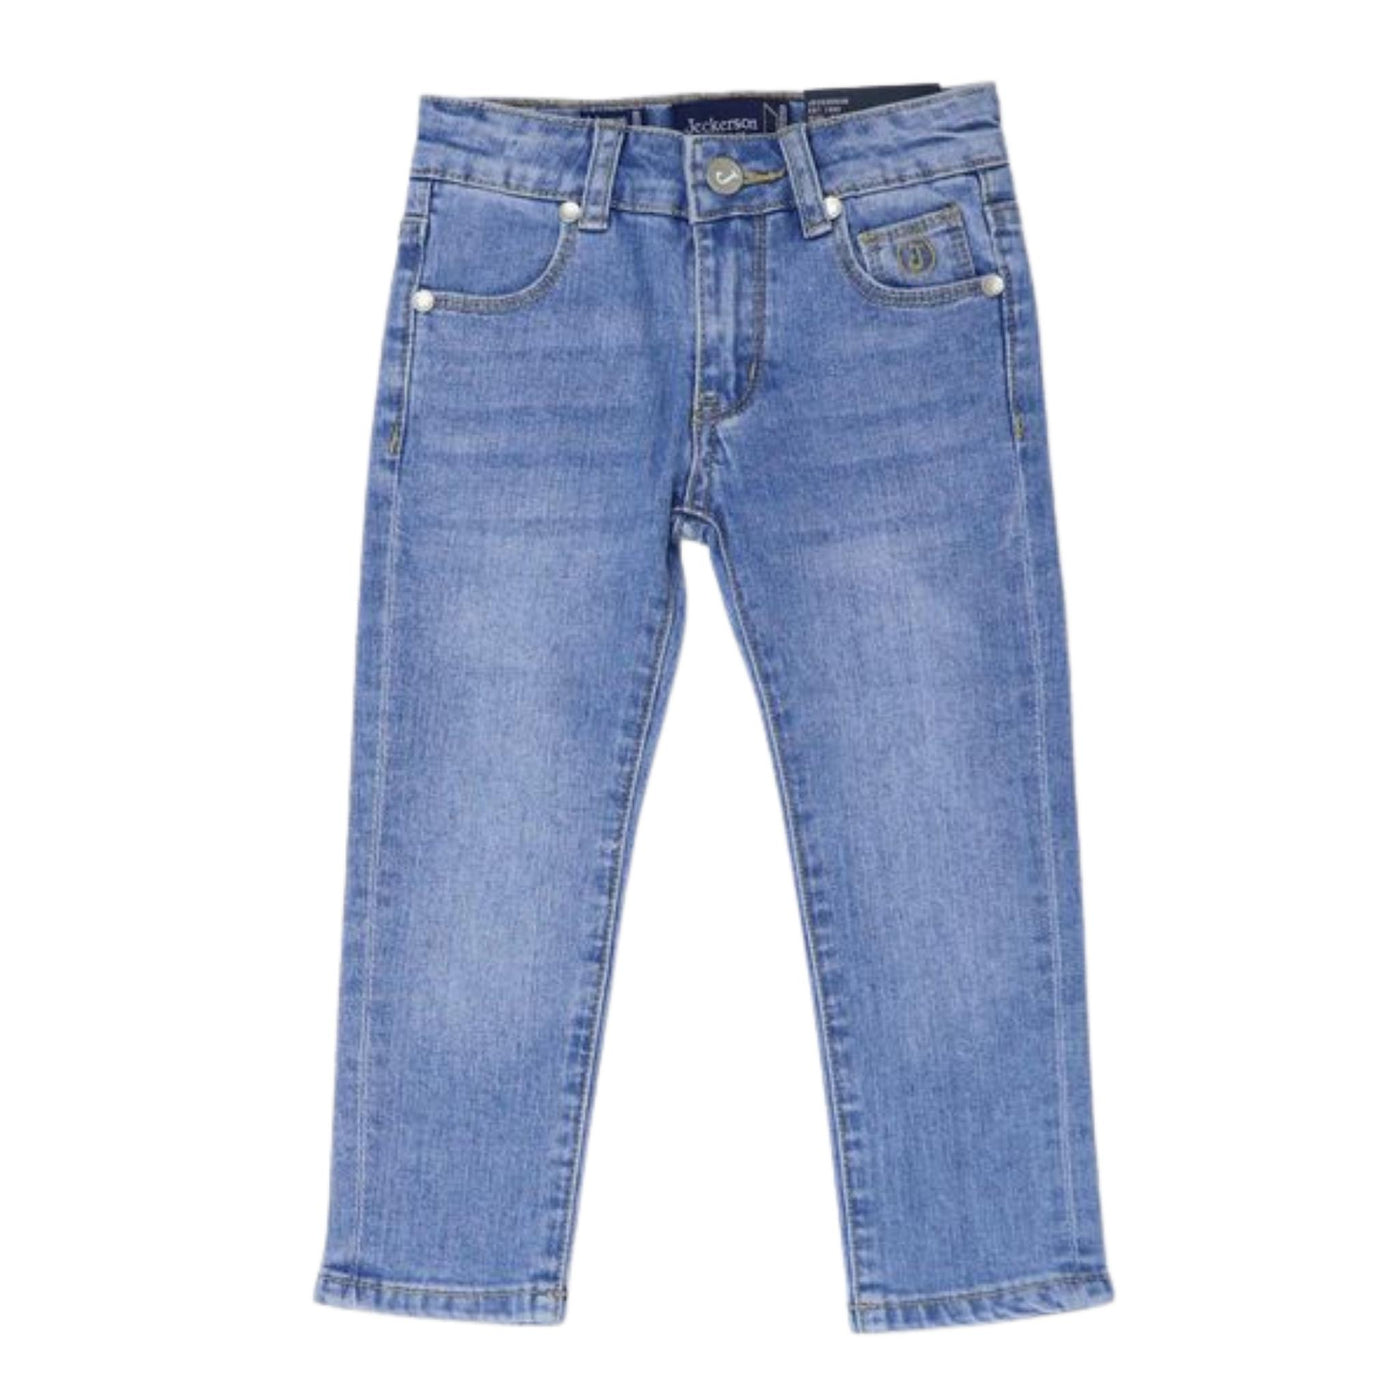 jeans bambino jeckerson cinque tasche con logo 